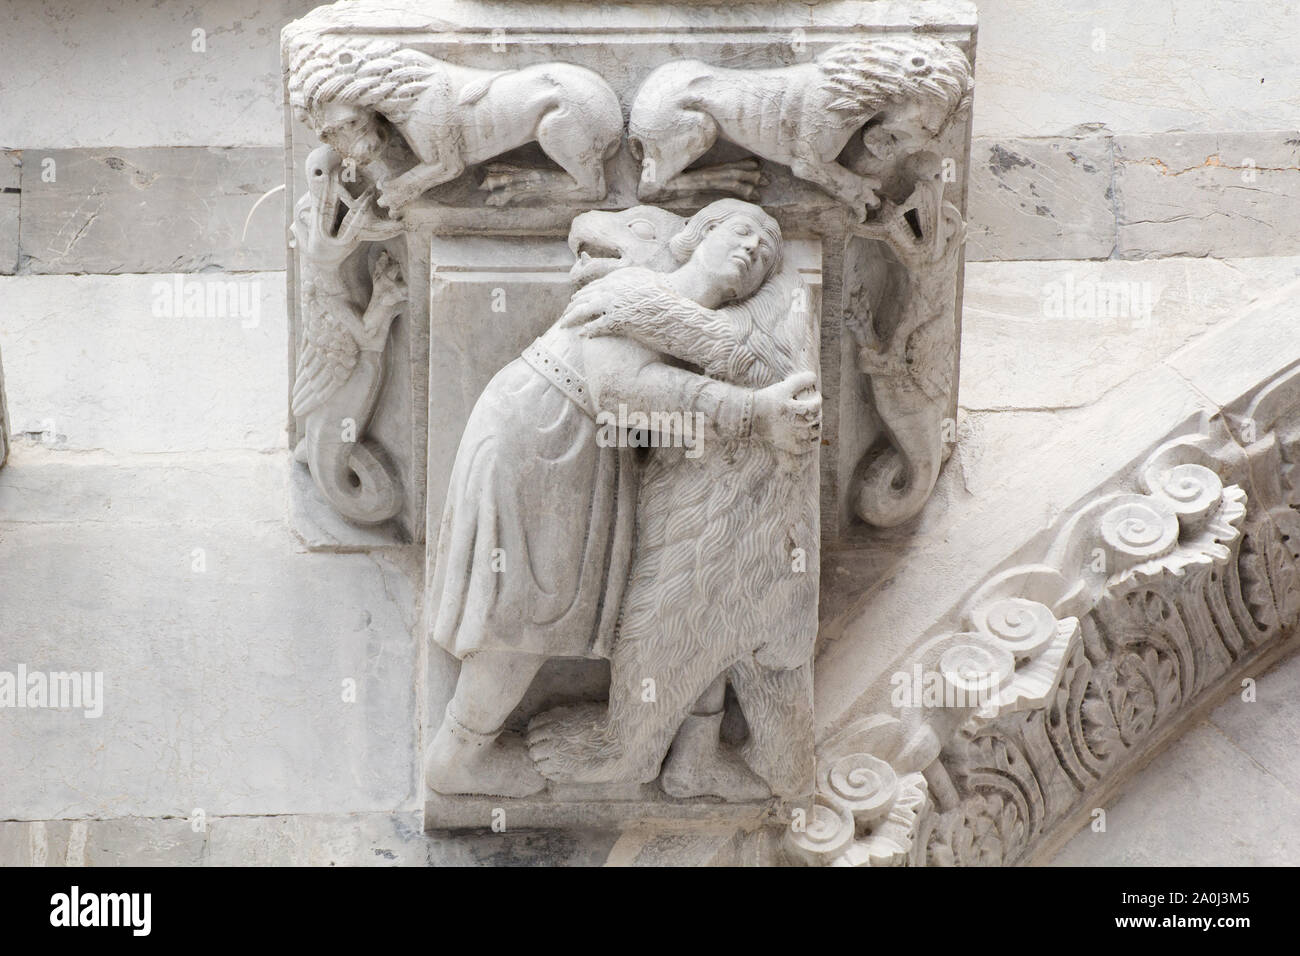 La imaginería medieval: un oso abrazando un hombre (XIII C) - portada románica de la Catedral de San Martín de Lucca (Toscana, Italia) Foto de stock